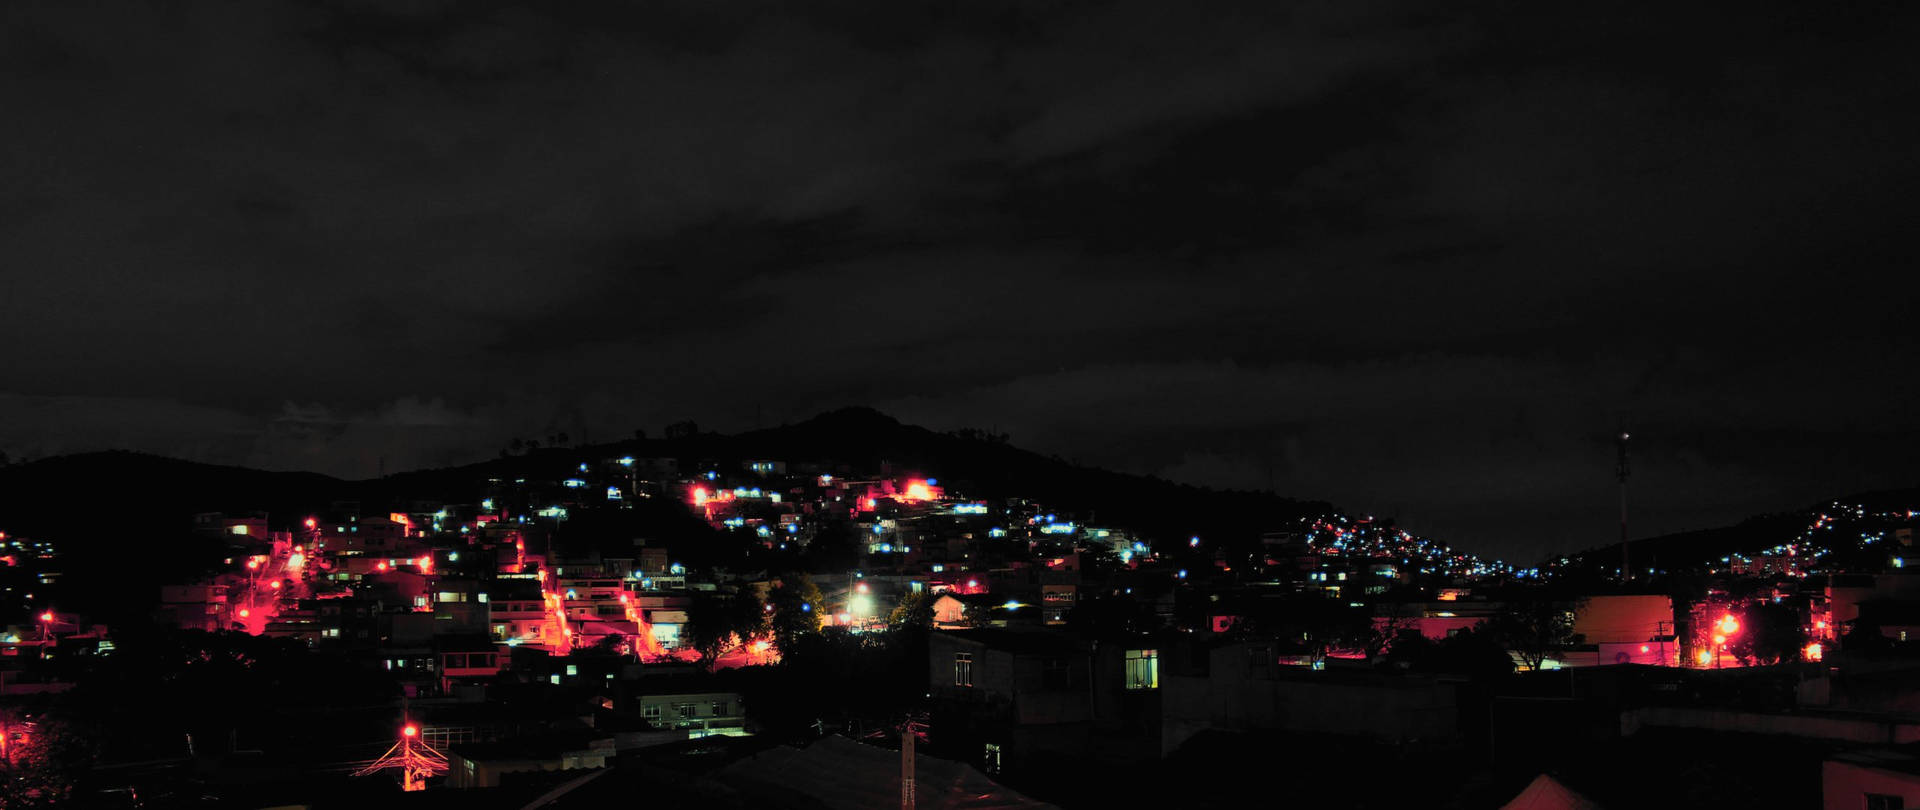 Lucesbrillantes Iluminan La Ciudad Después De Oscurecer. Fondo de pantalla